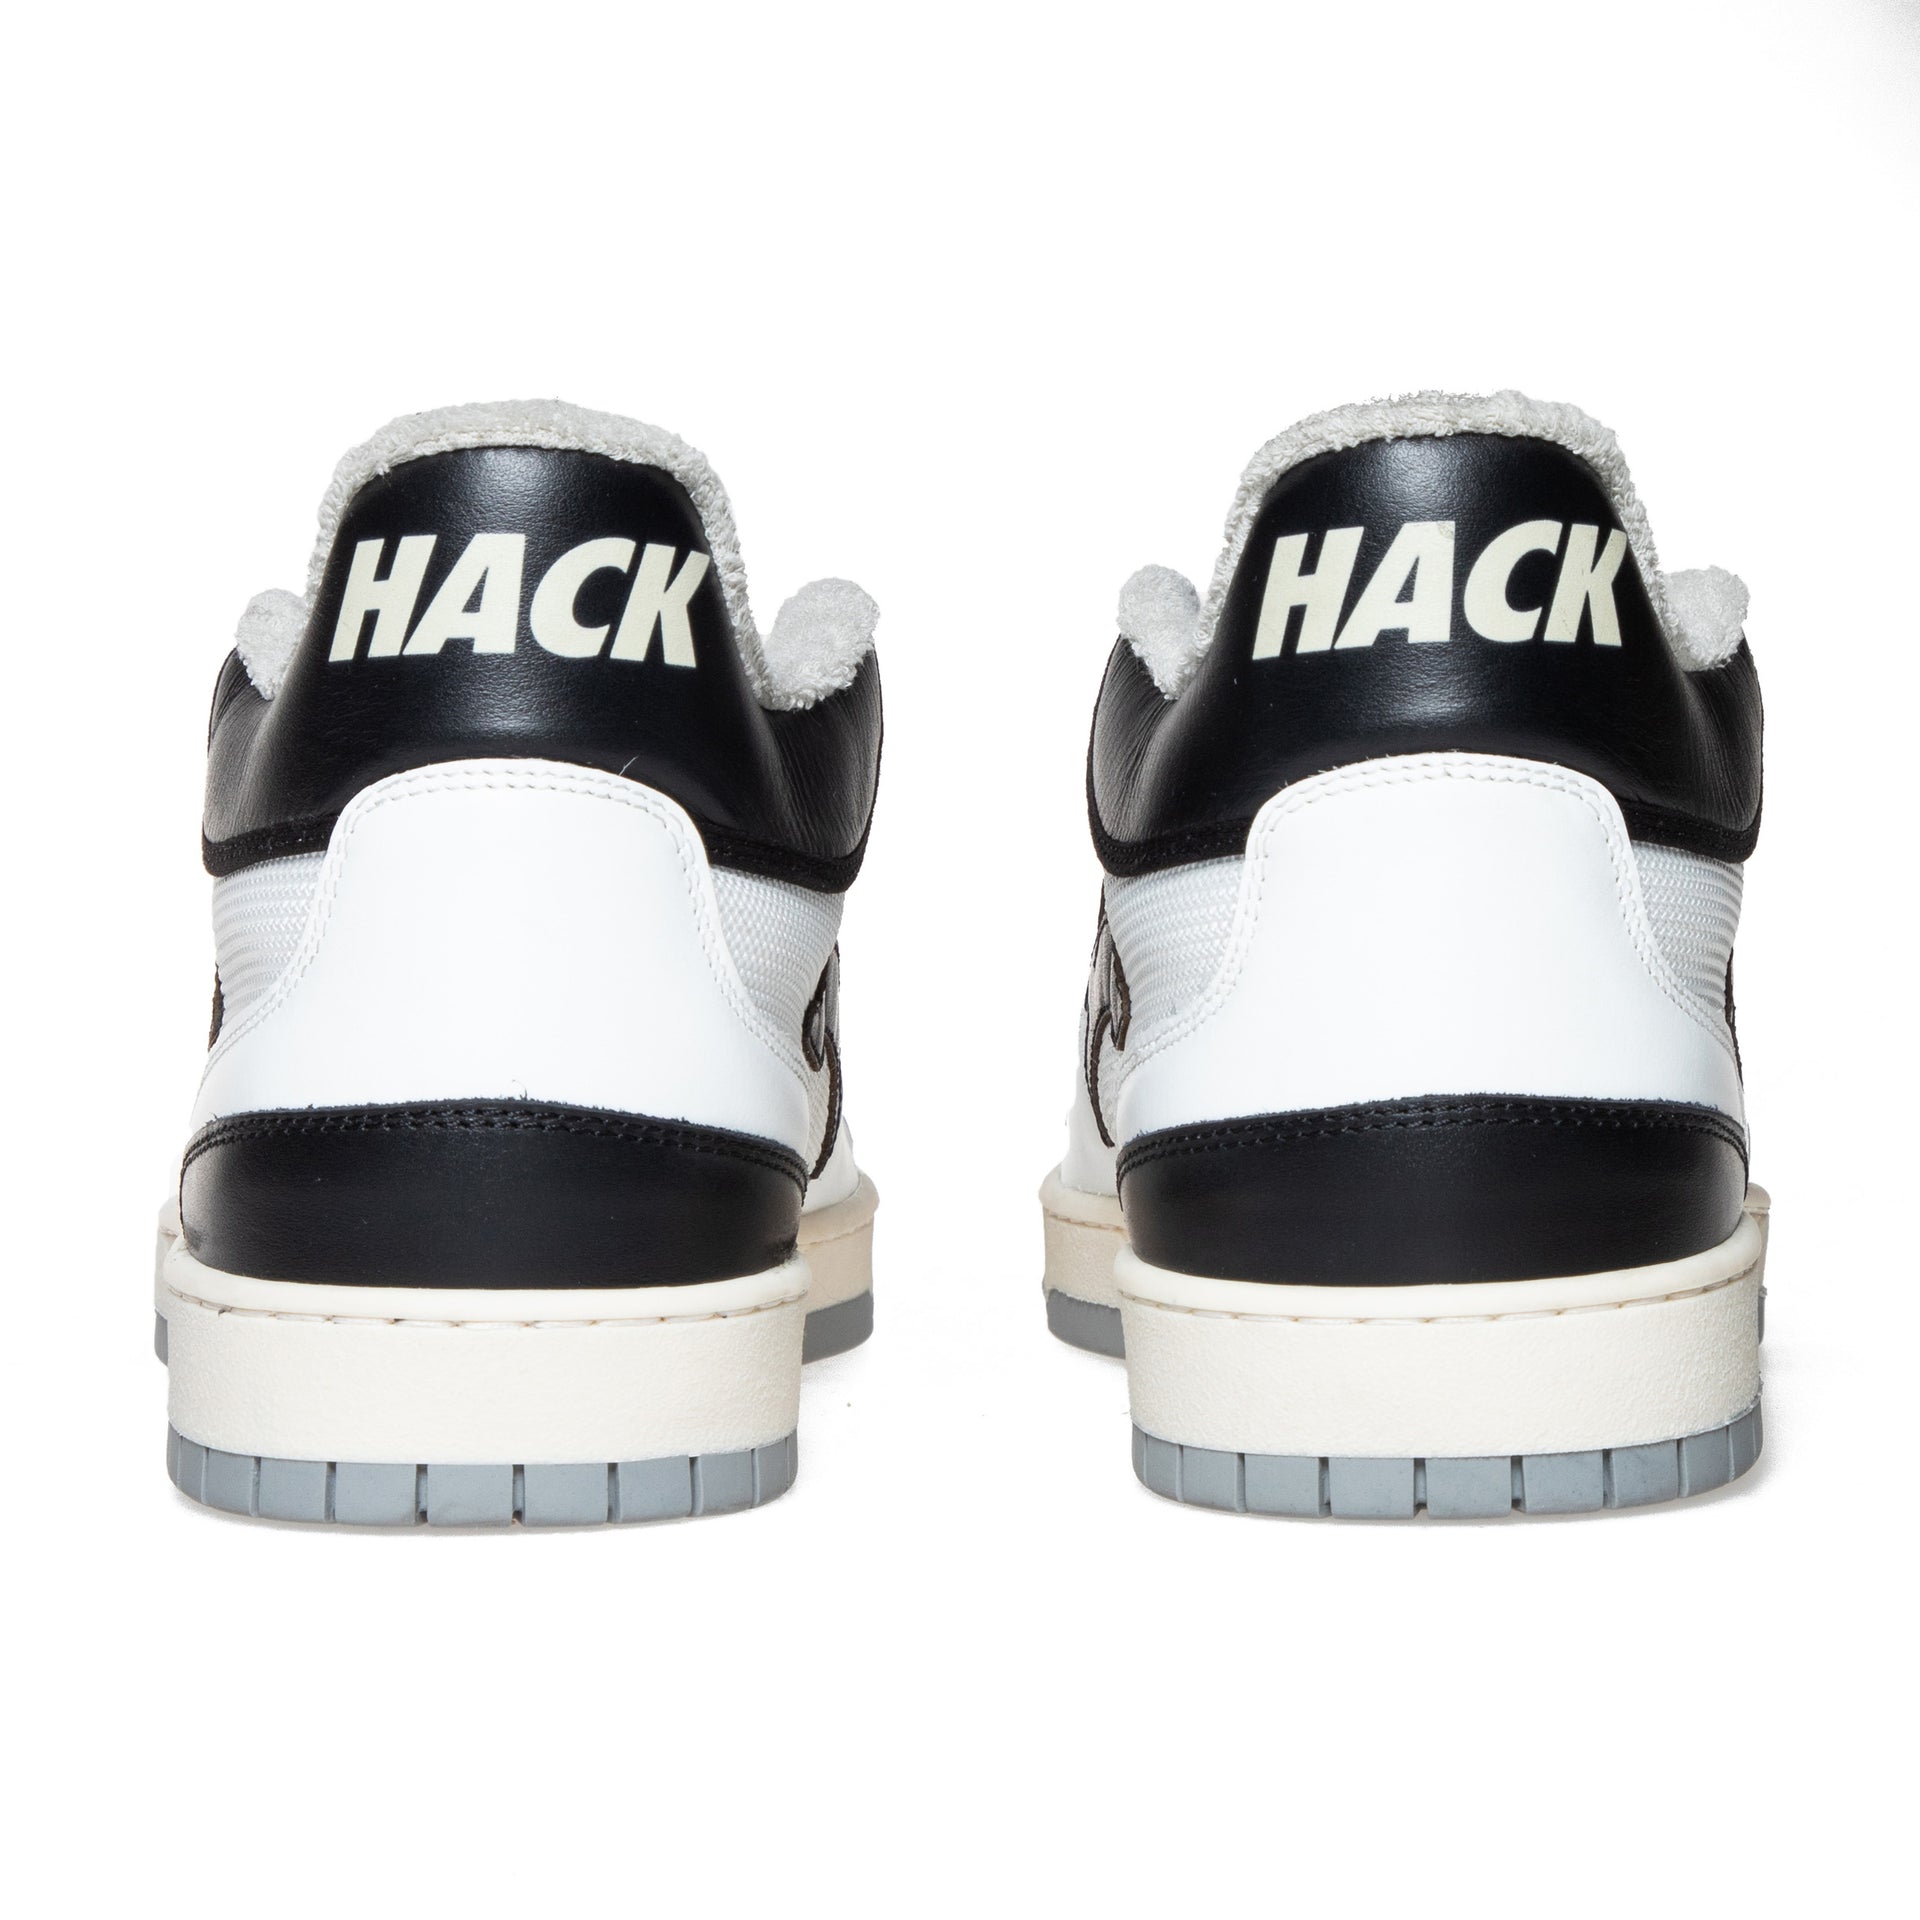 Hack Attack - White